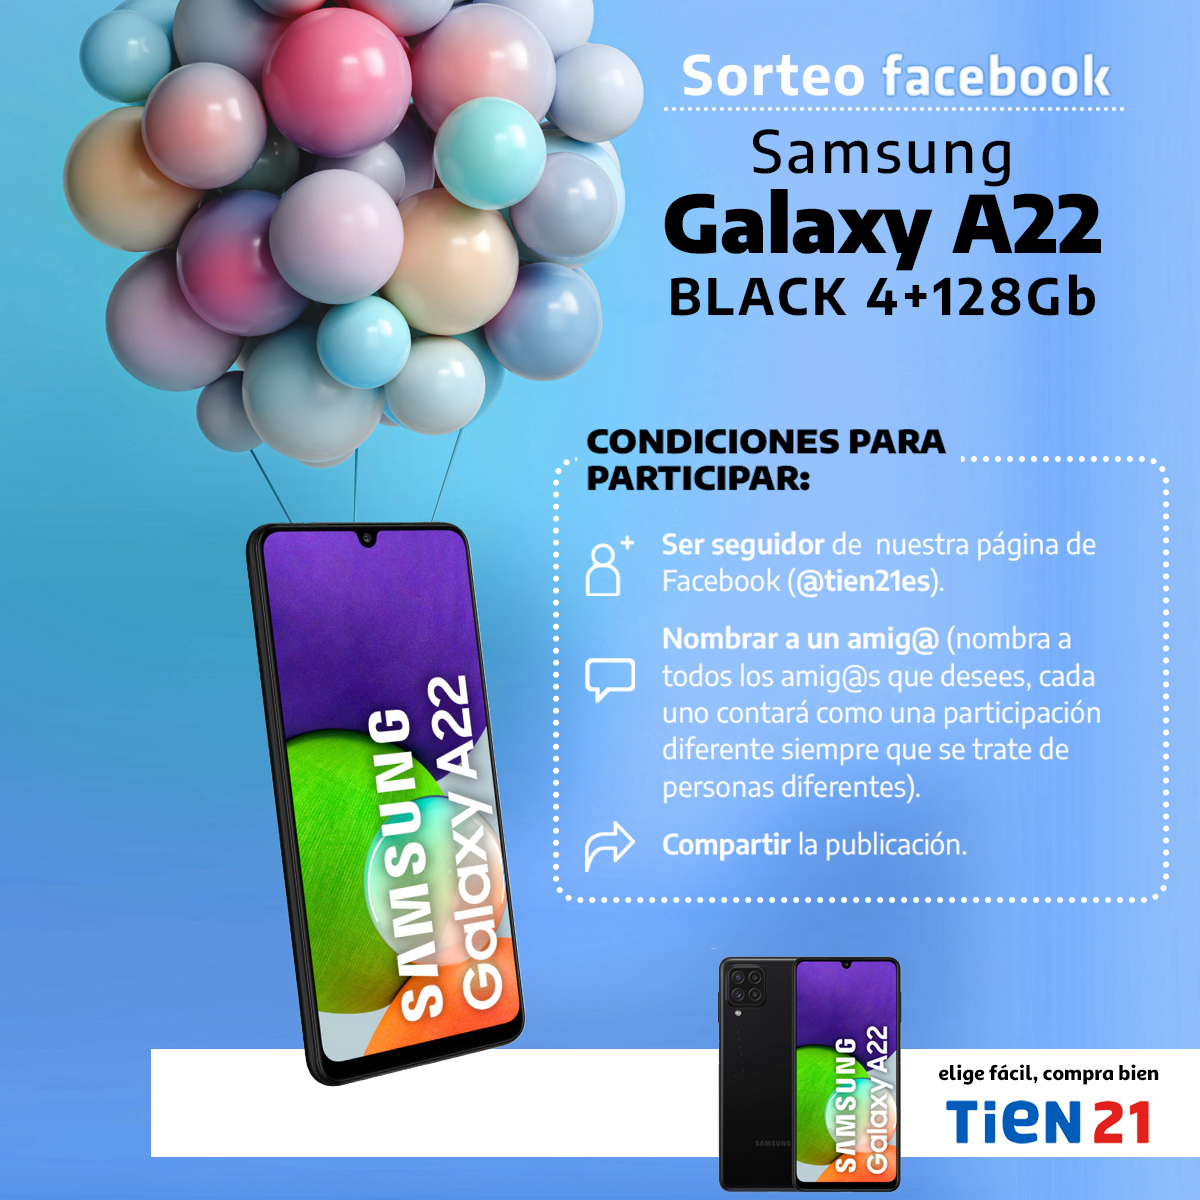 Consigue un smartphone Samsung Galaxy A22 participando en el sorteo de Facebook de Tien21